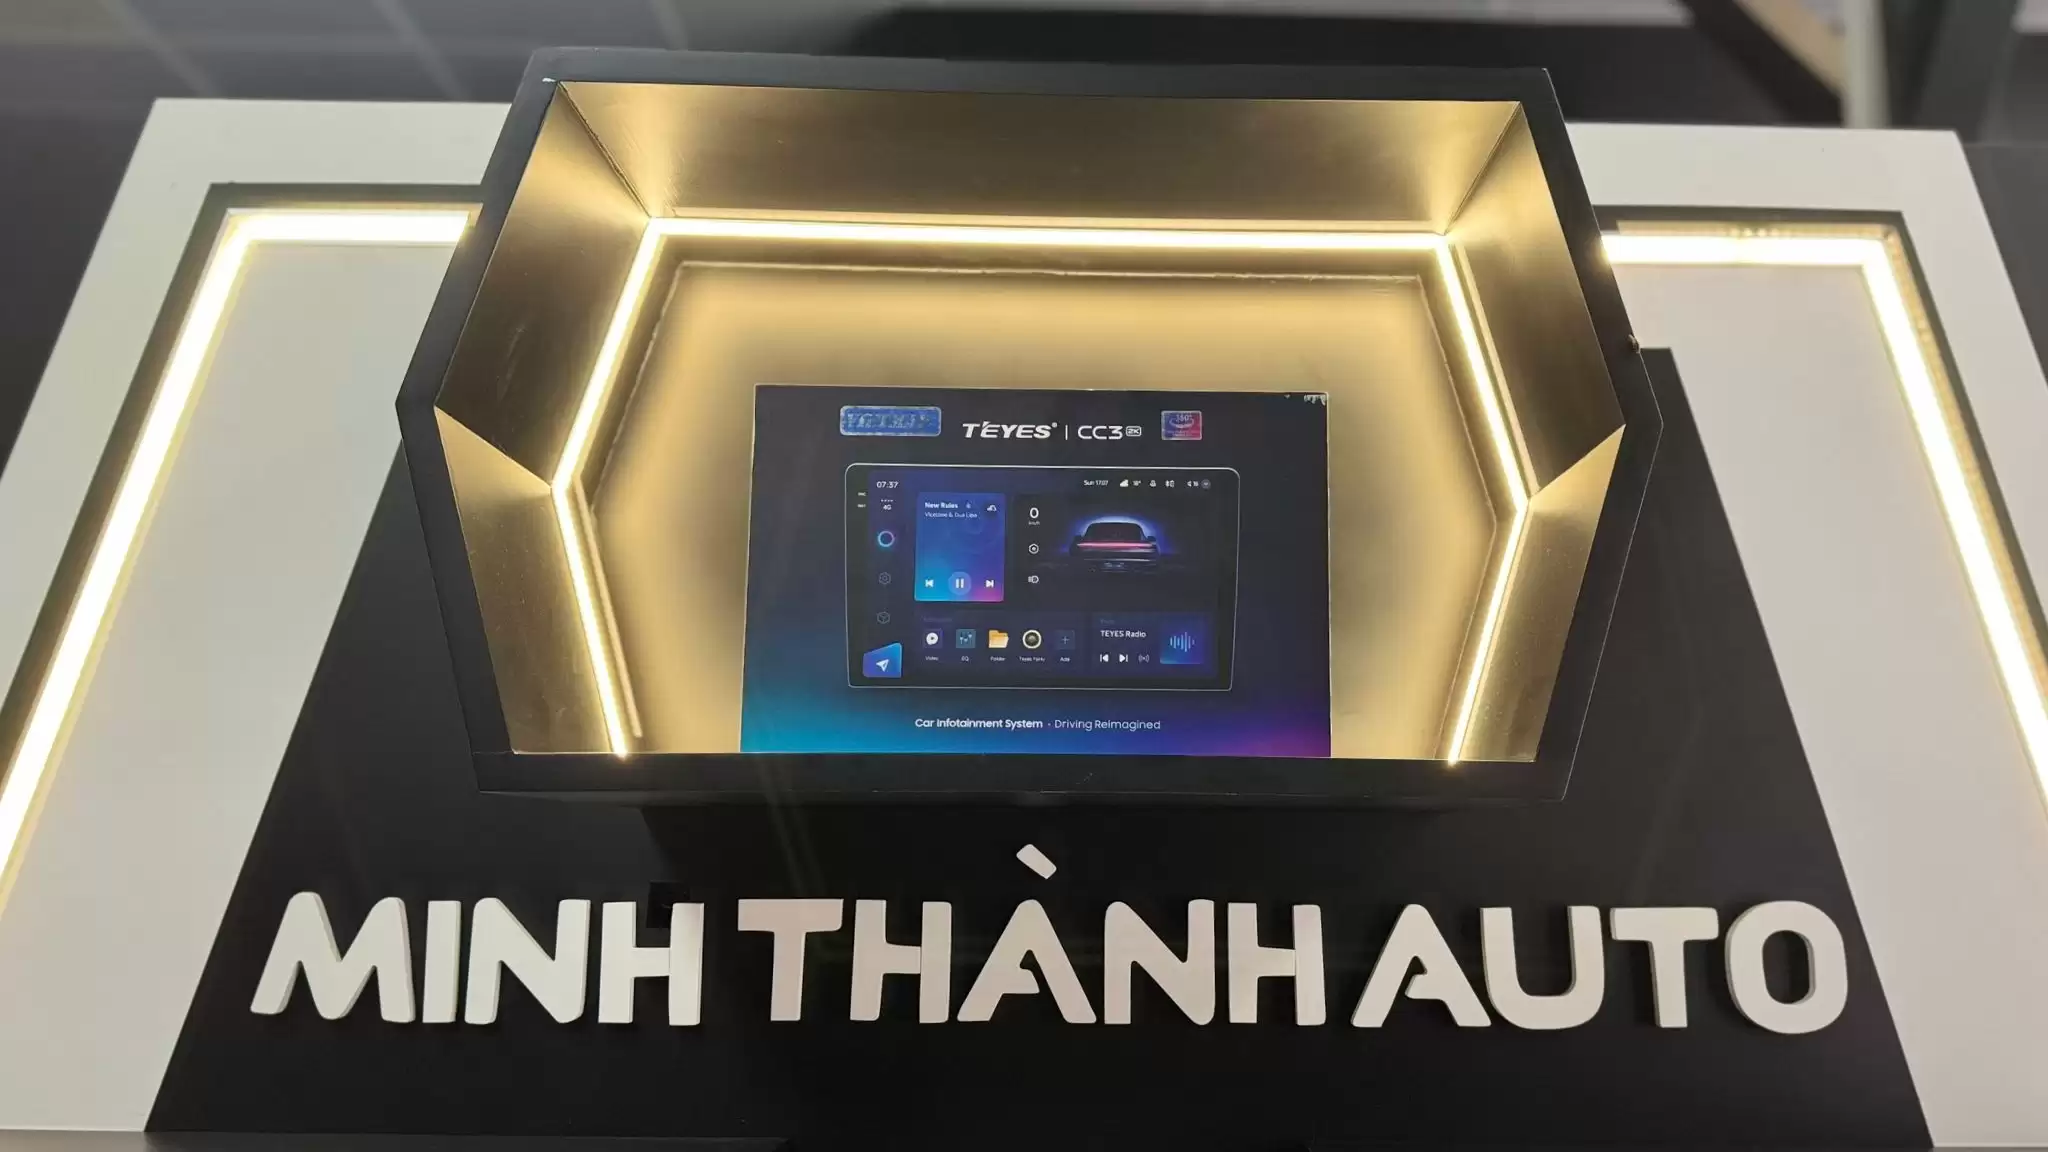 Minhthanhauto.vn phân phối và lắp đặt chính hãng các sản phẩm Teyes tại Thanh Hóa